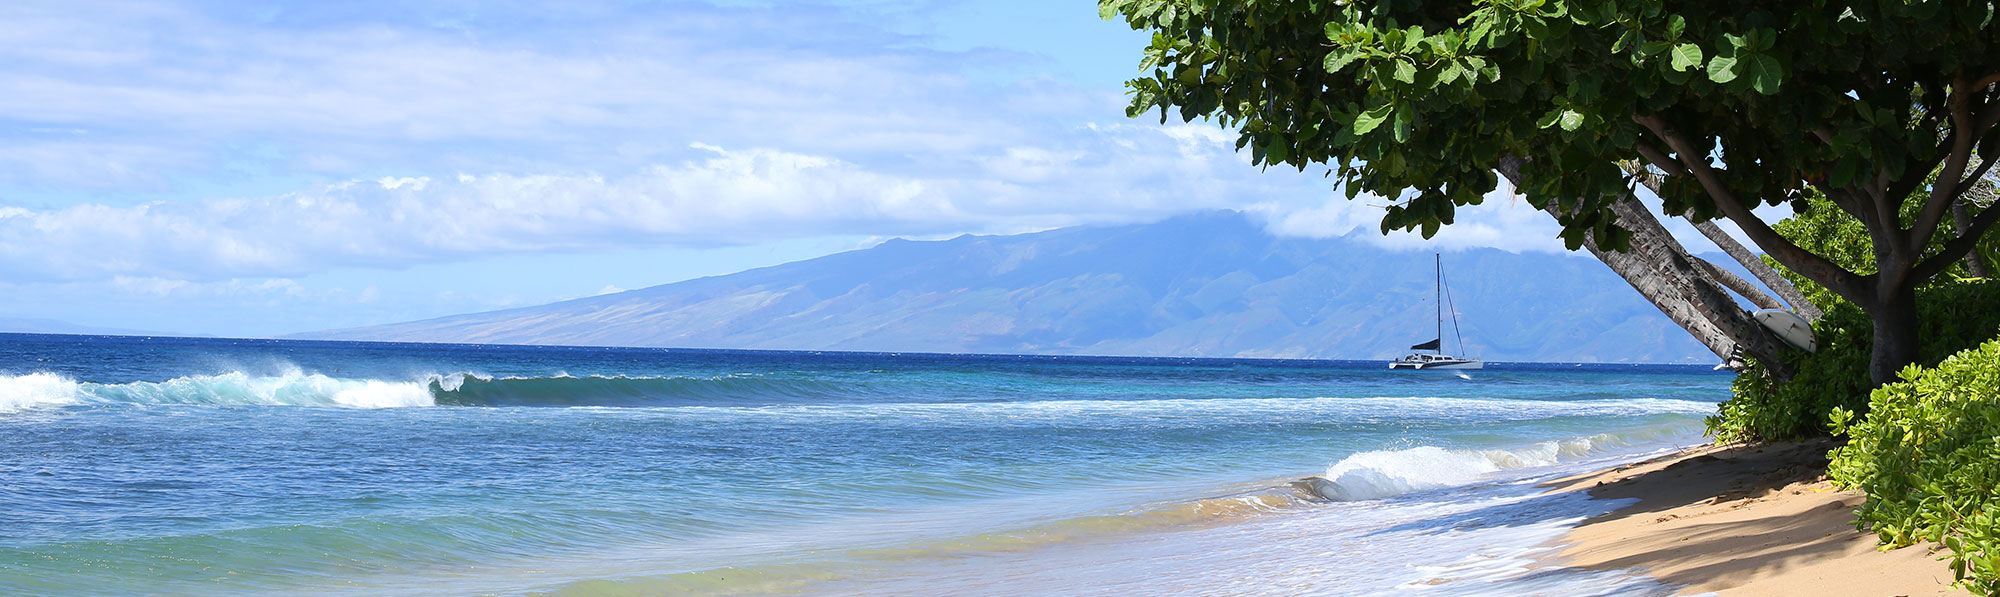 Hawaiian Beach-Side